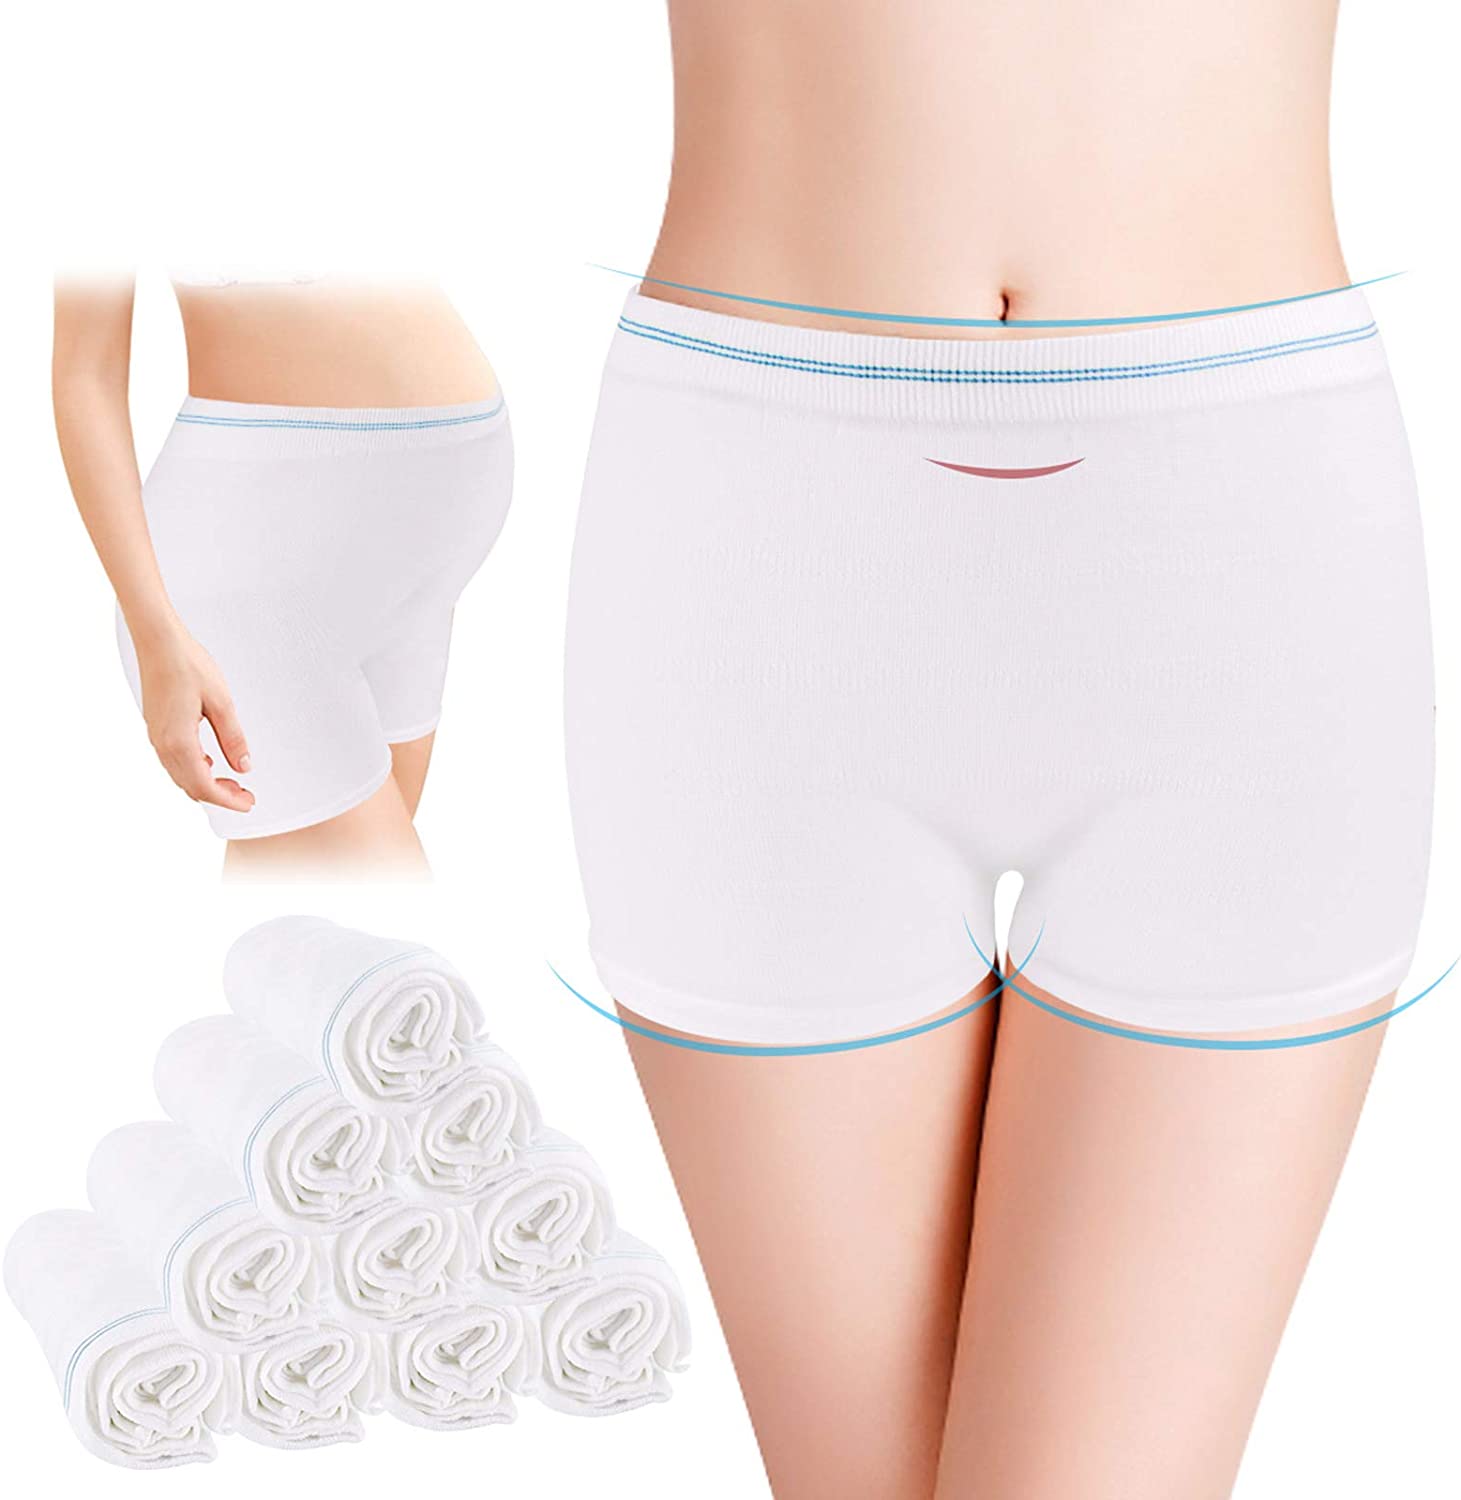  Mesh Underwear Postpartum High Waist Women Mesh